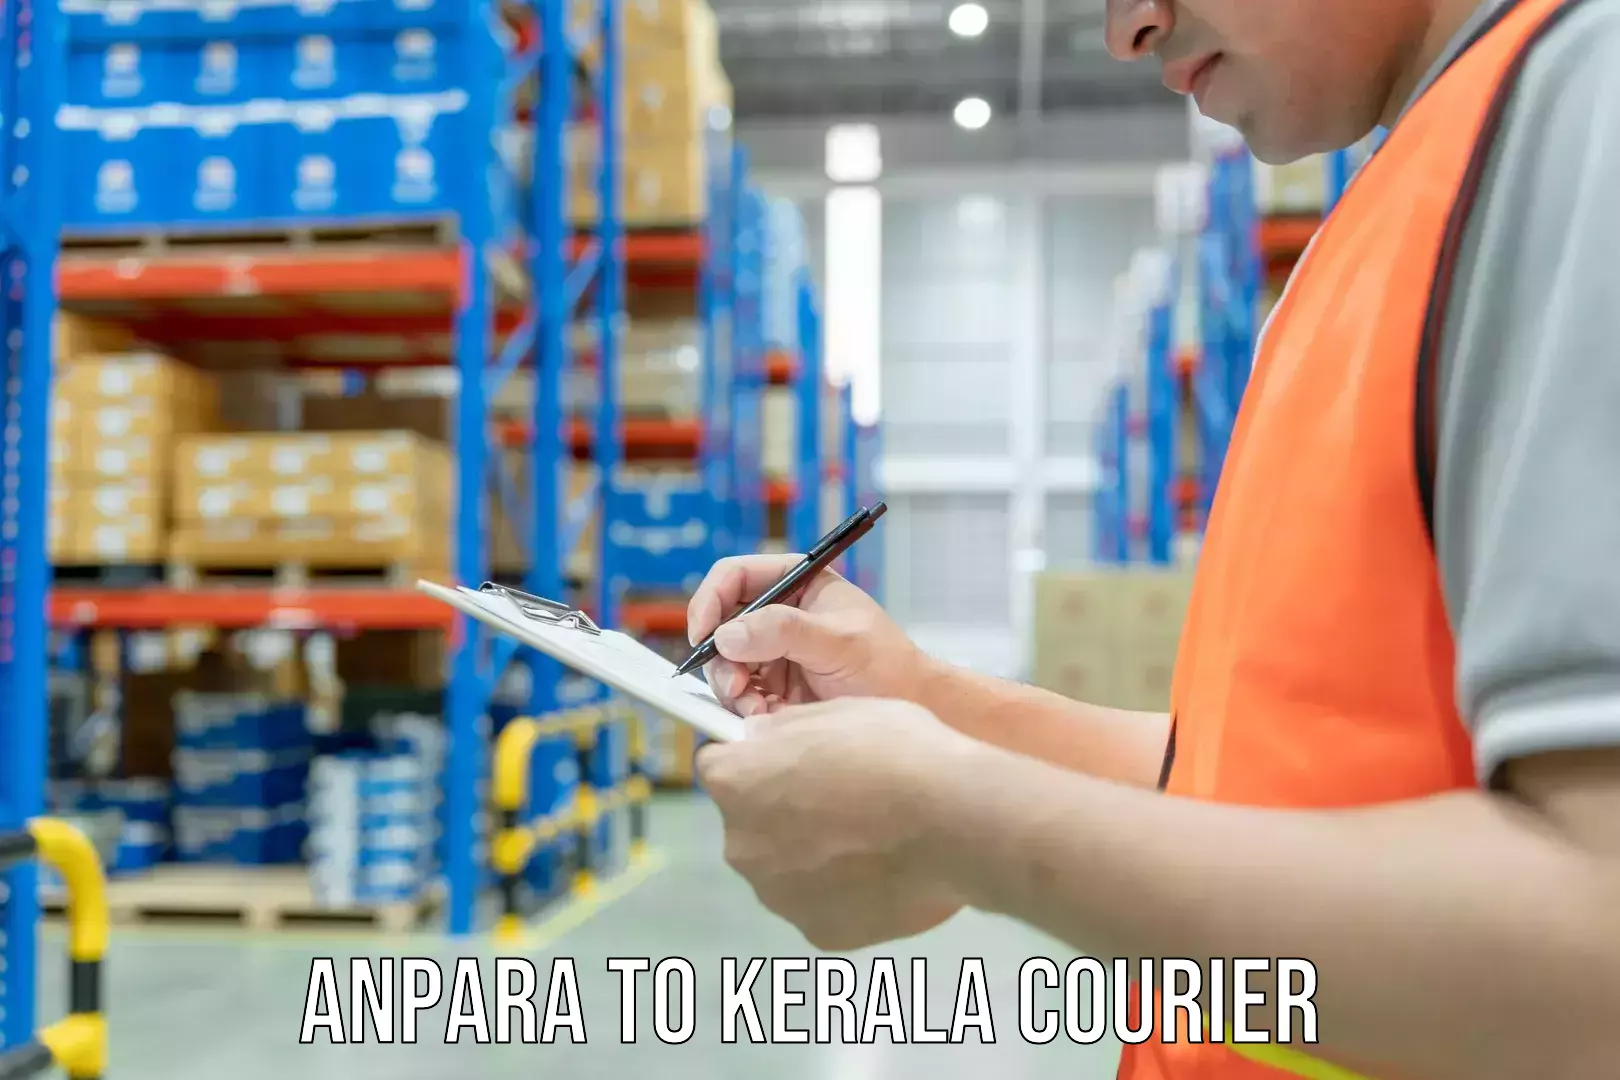 Express logistics Anpara to Kerala